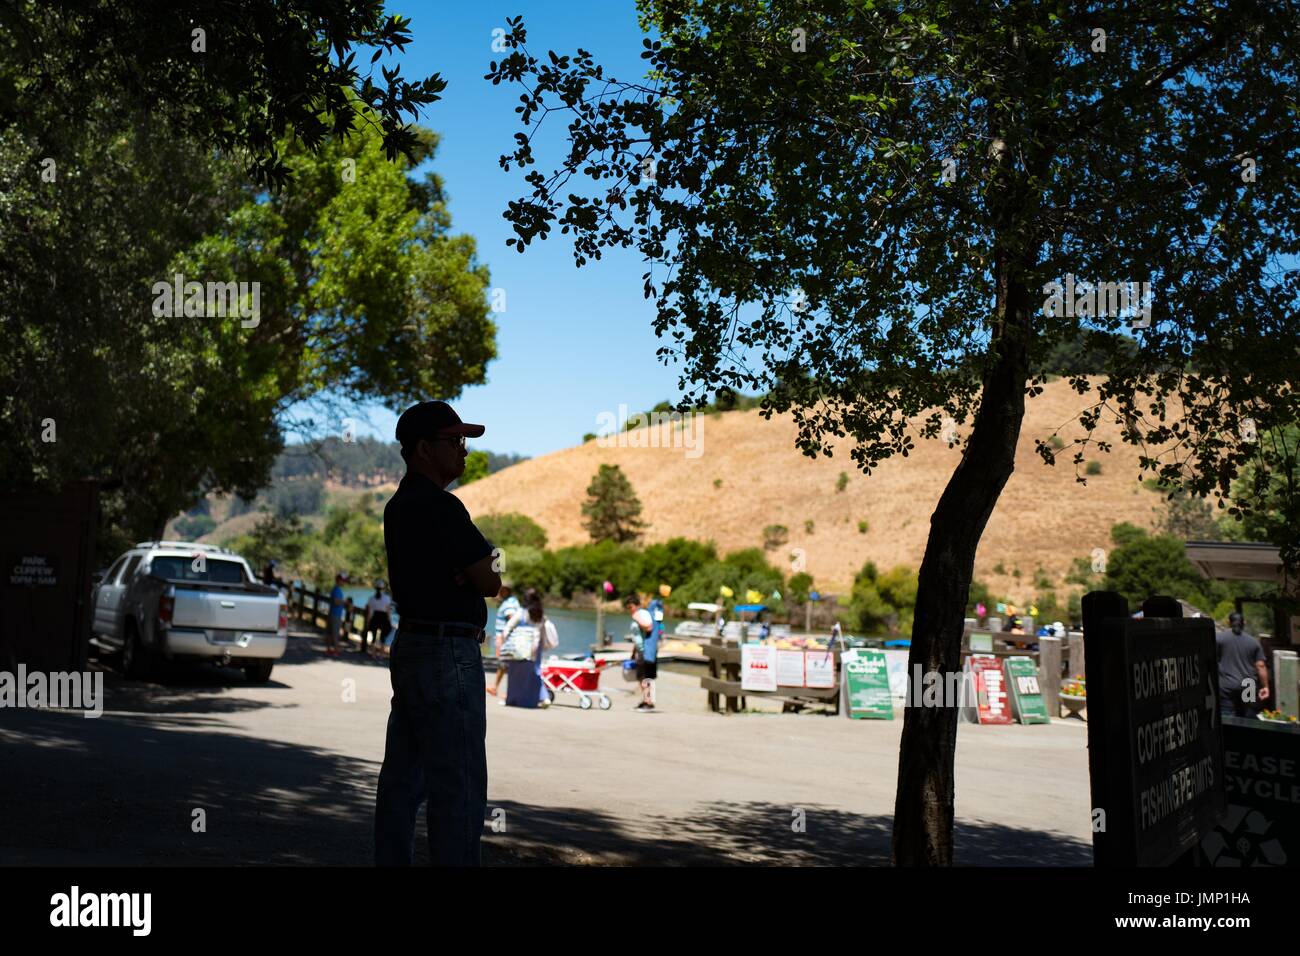 Die Silhouette eines Mannes, der seine Arme kreuzen ist sichtbar, wie er in Richtung der Marina im See Chabot Regional Park, ein Regionalpark East Bay in Castro Valley, Kalifornien, 4. Juli 2017 aussieht. Stockfoto